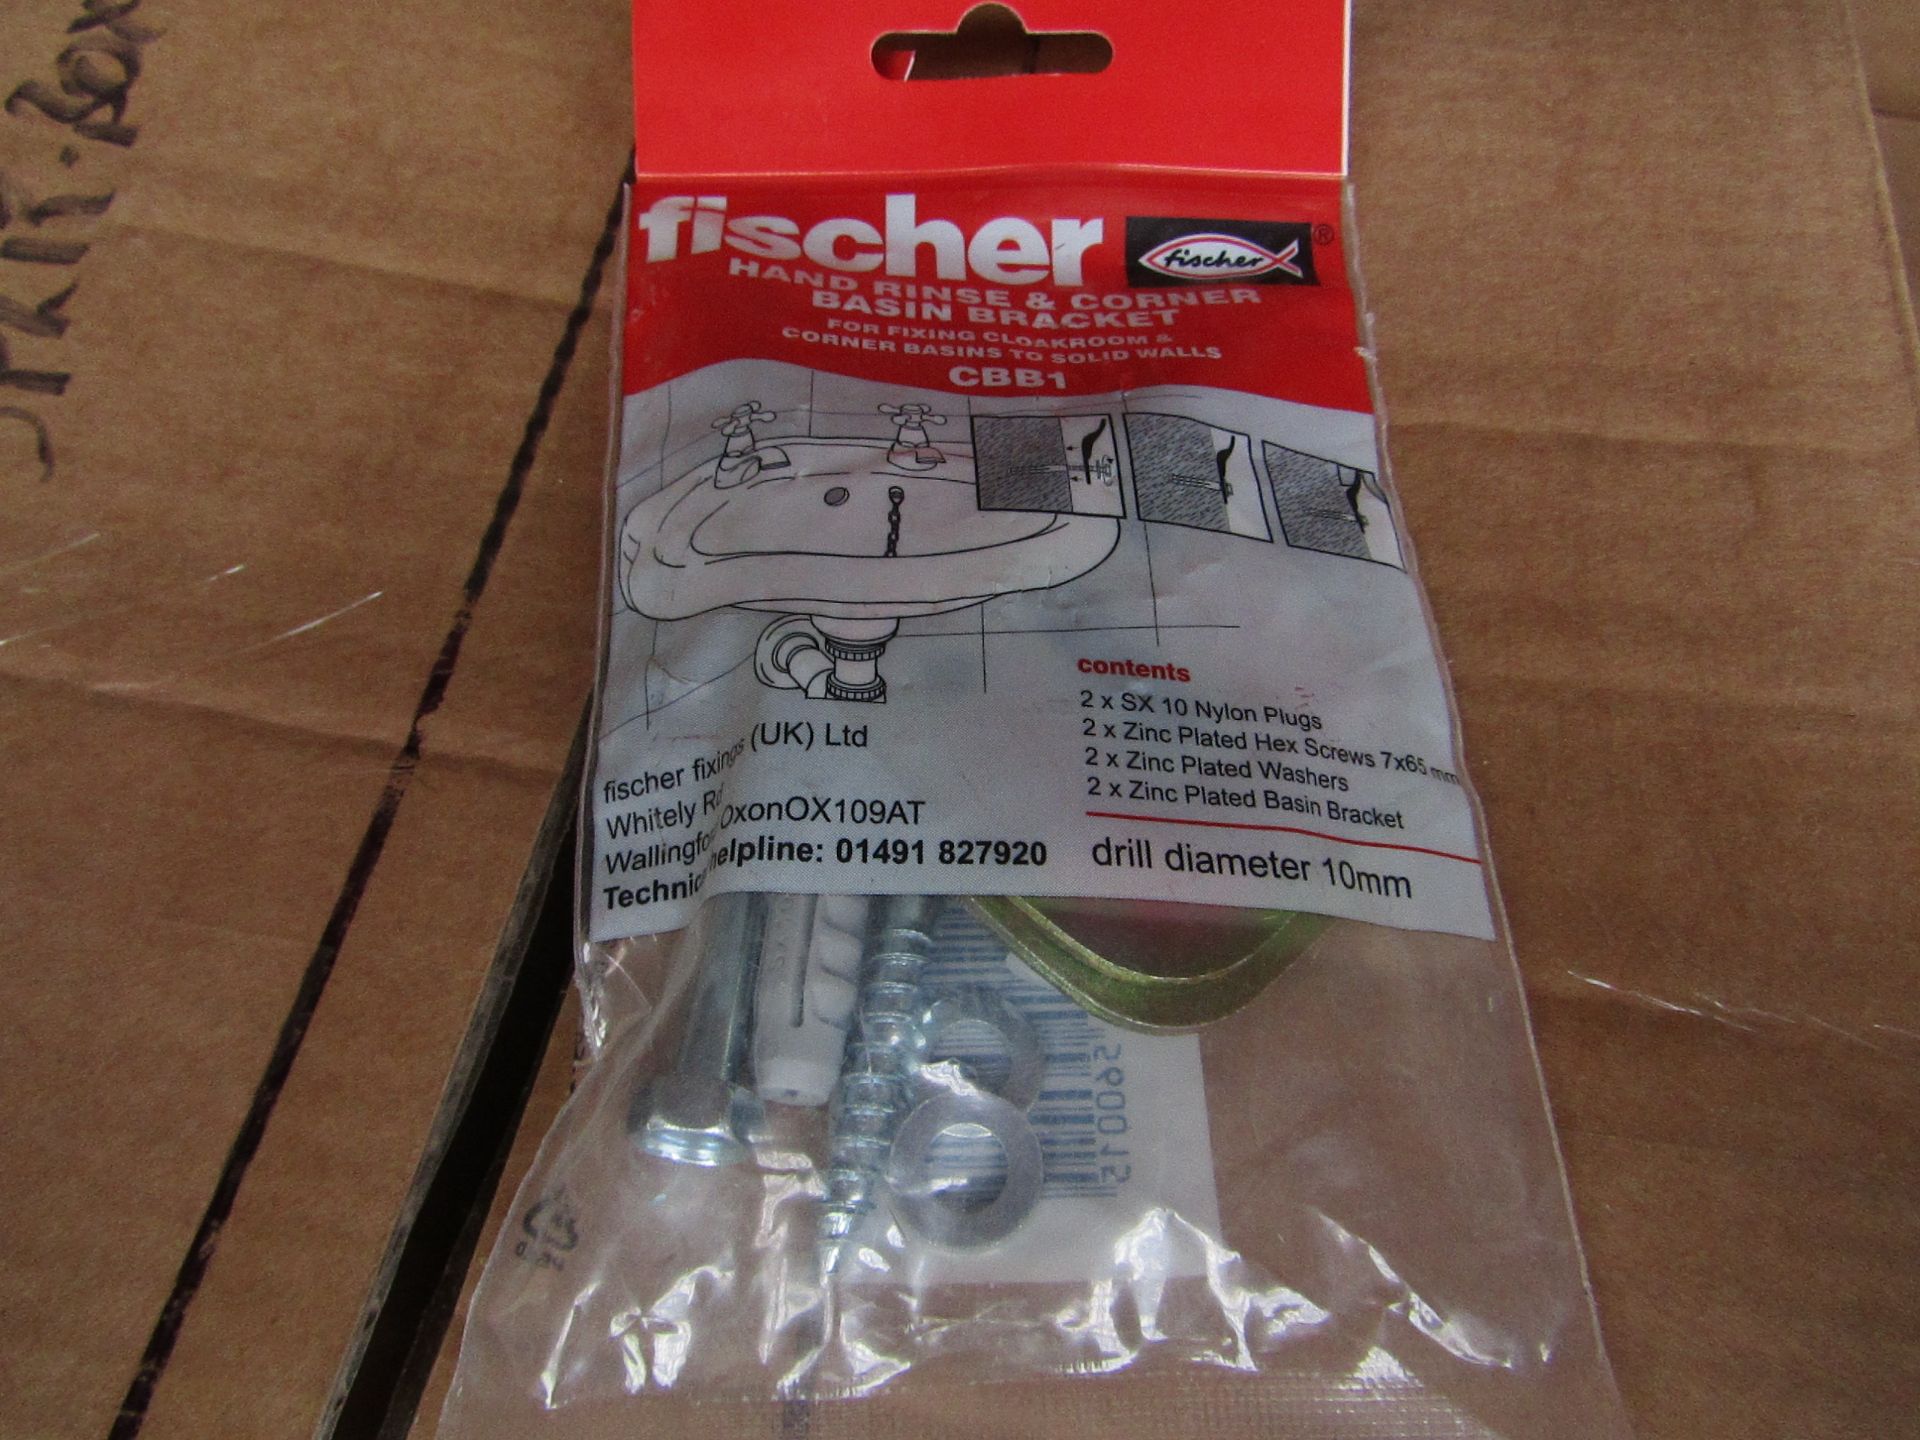 5x Fischer - Hand Rinse & Corner Basin Bracket Drill Diameter 10mm - New & Packaged.